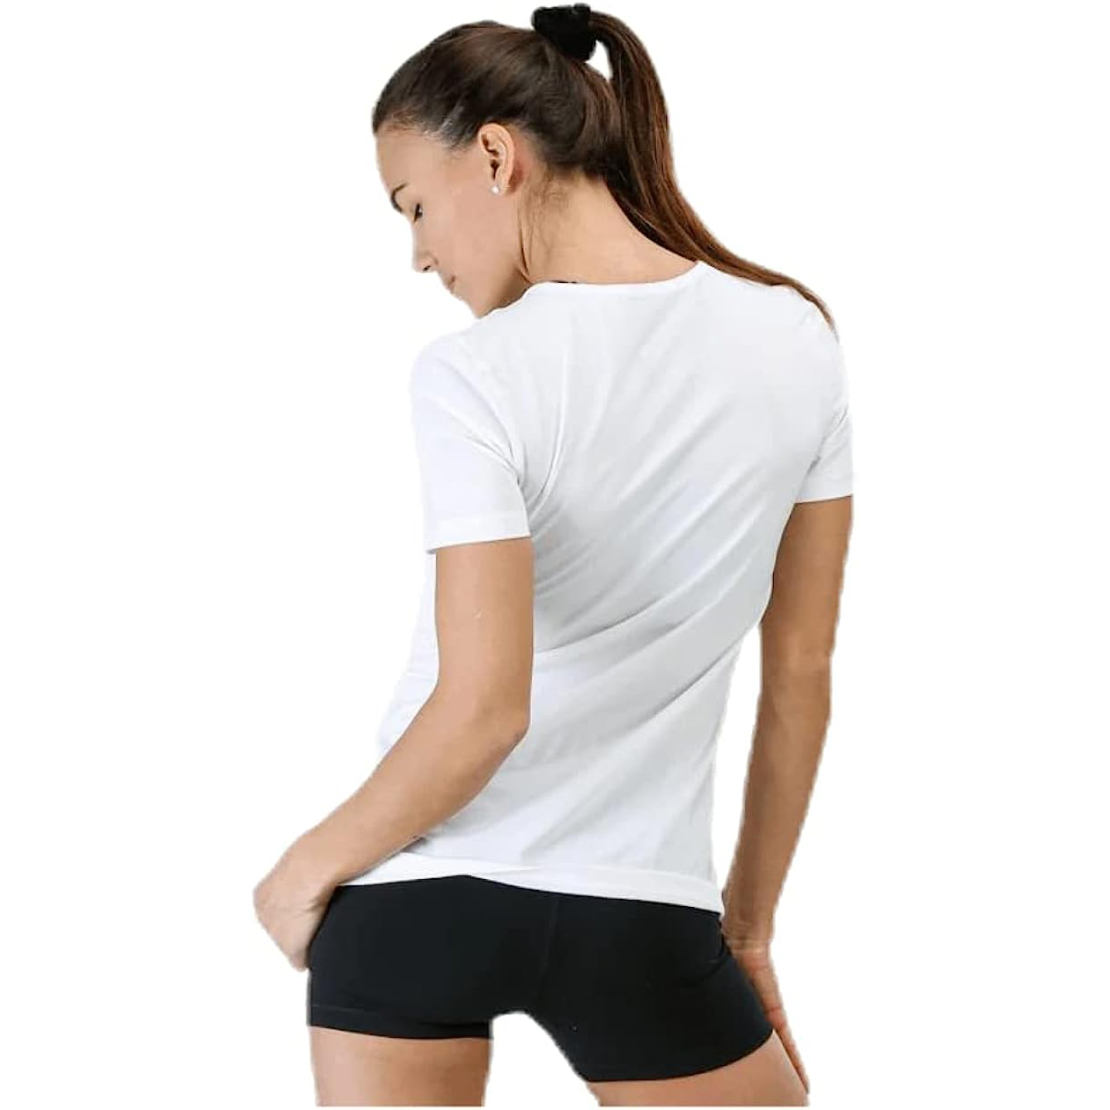 חולצת נייק לנשים | Nike Short-Sleeve Mesh Training Top